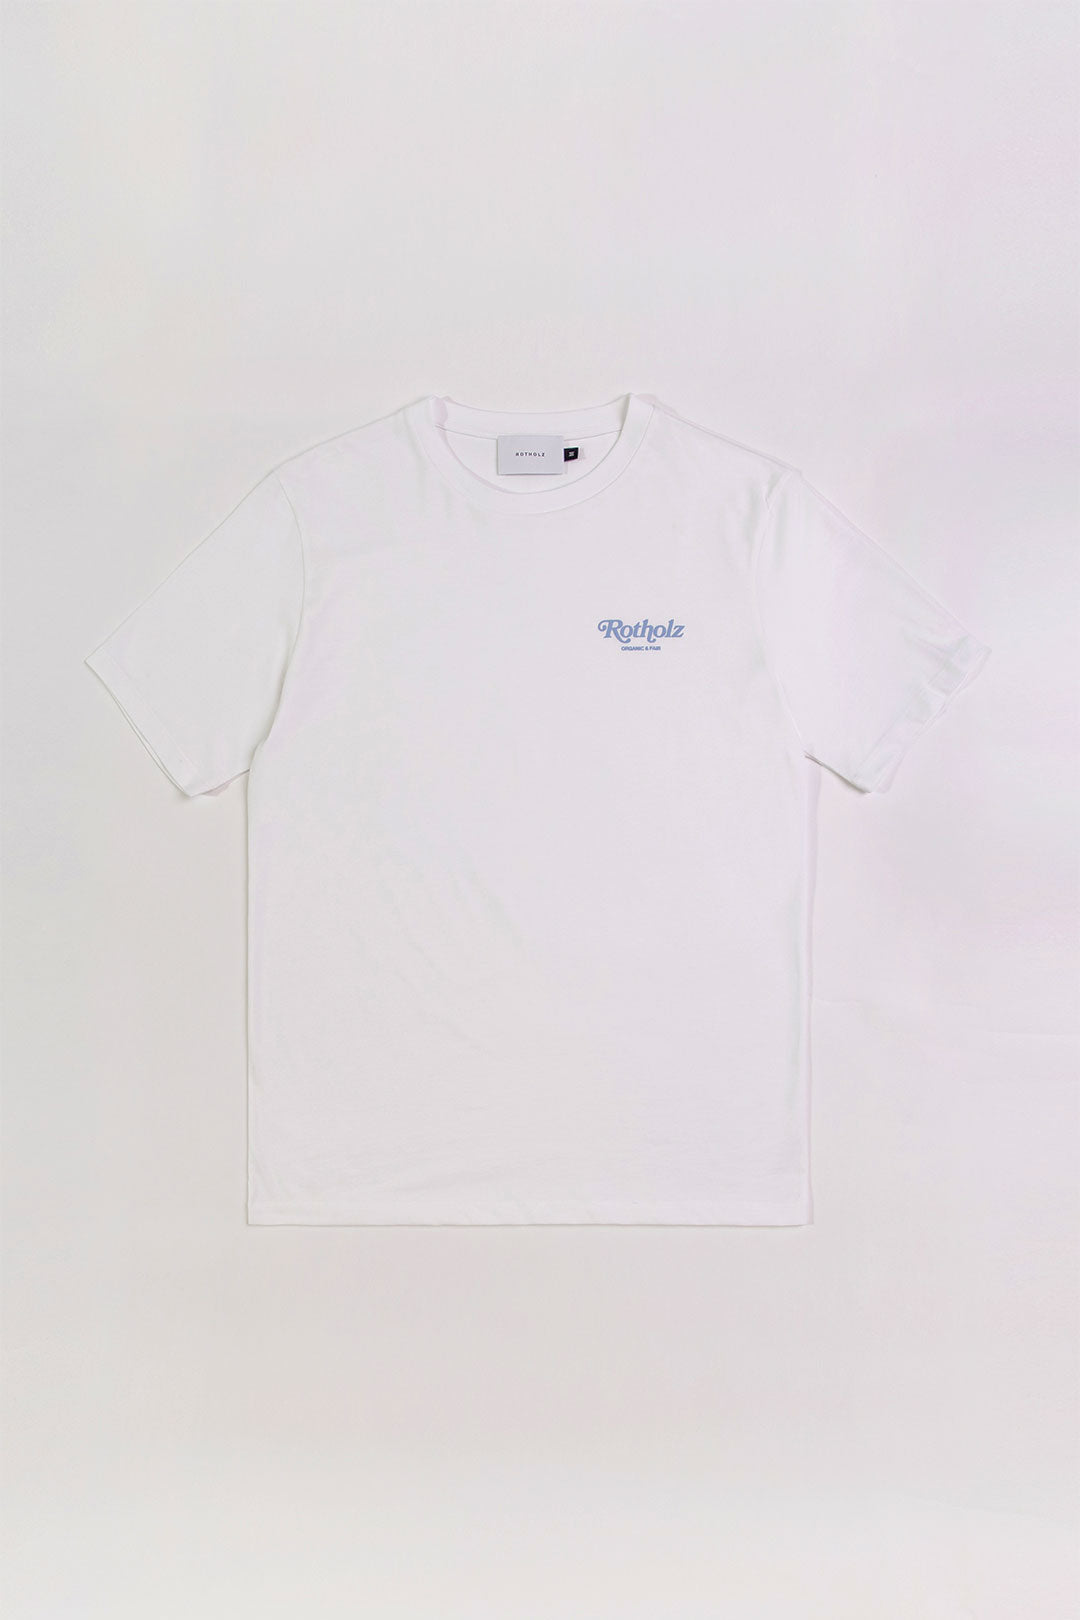 Weisses T-Shirt Retro Logo aus 100% Bio-Baumwolle von Rotholz